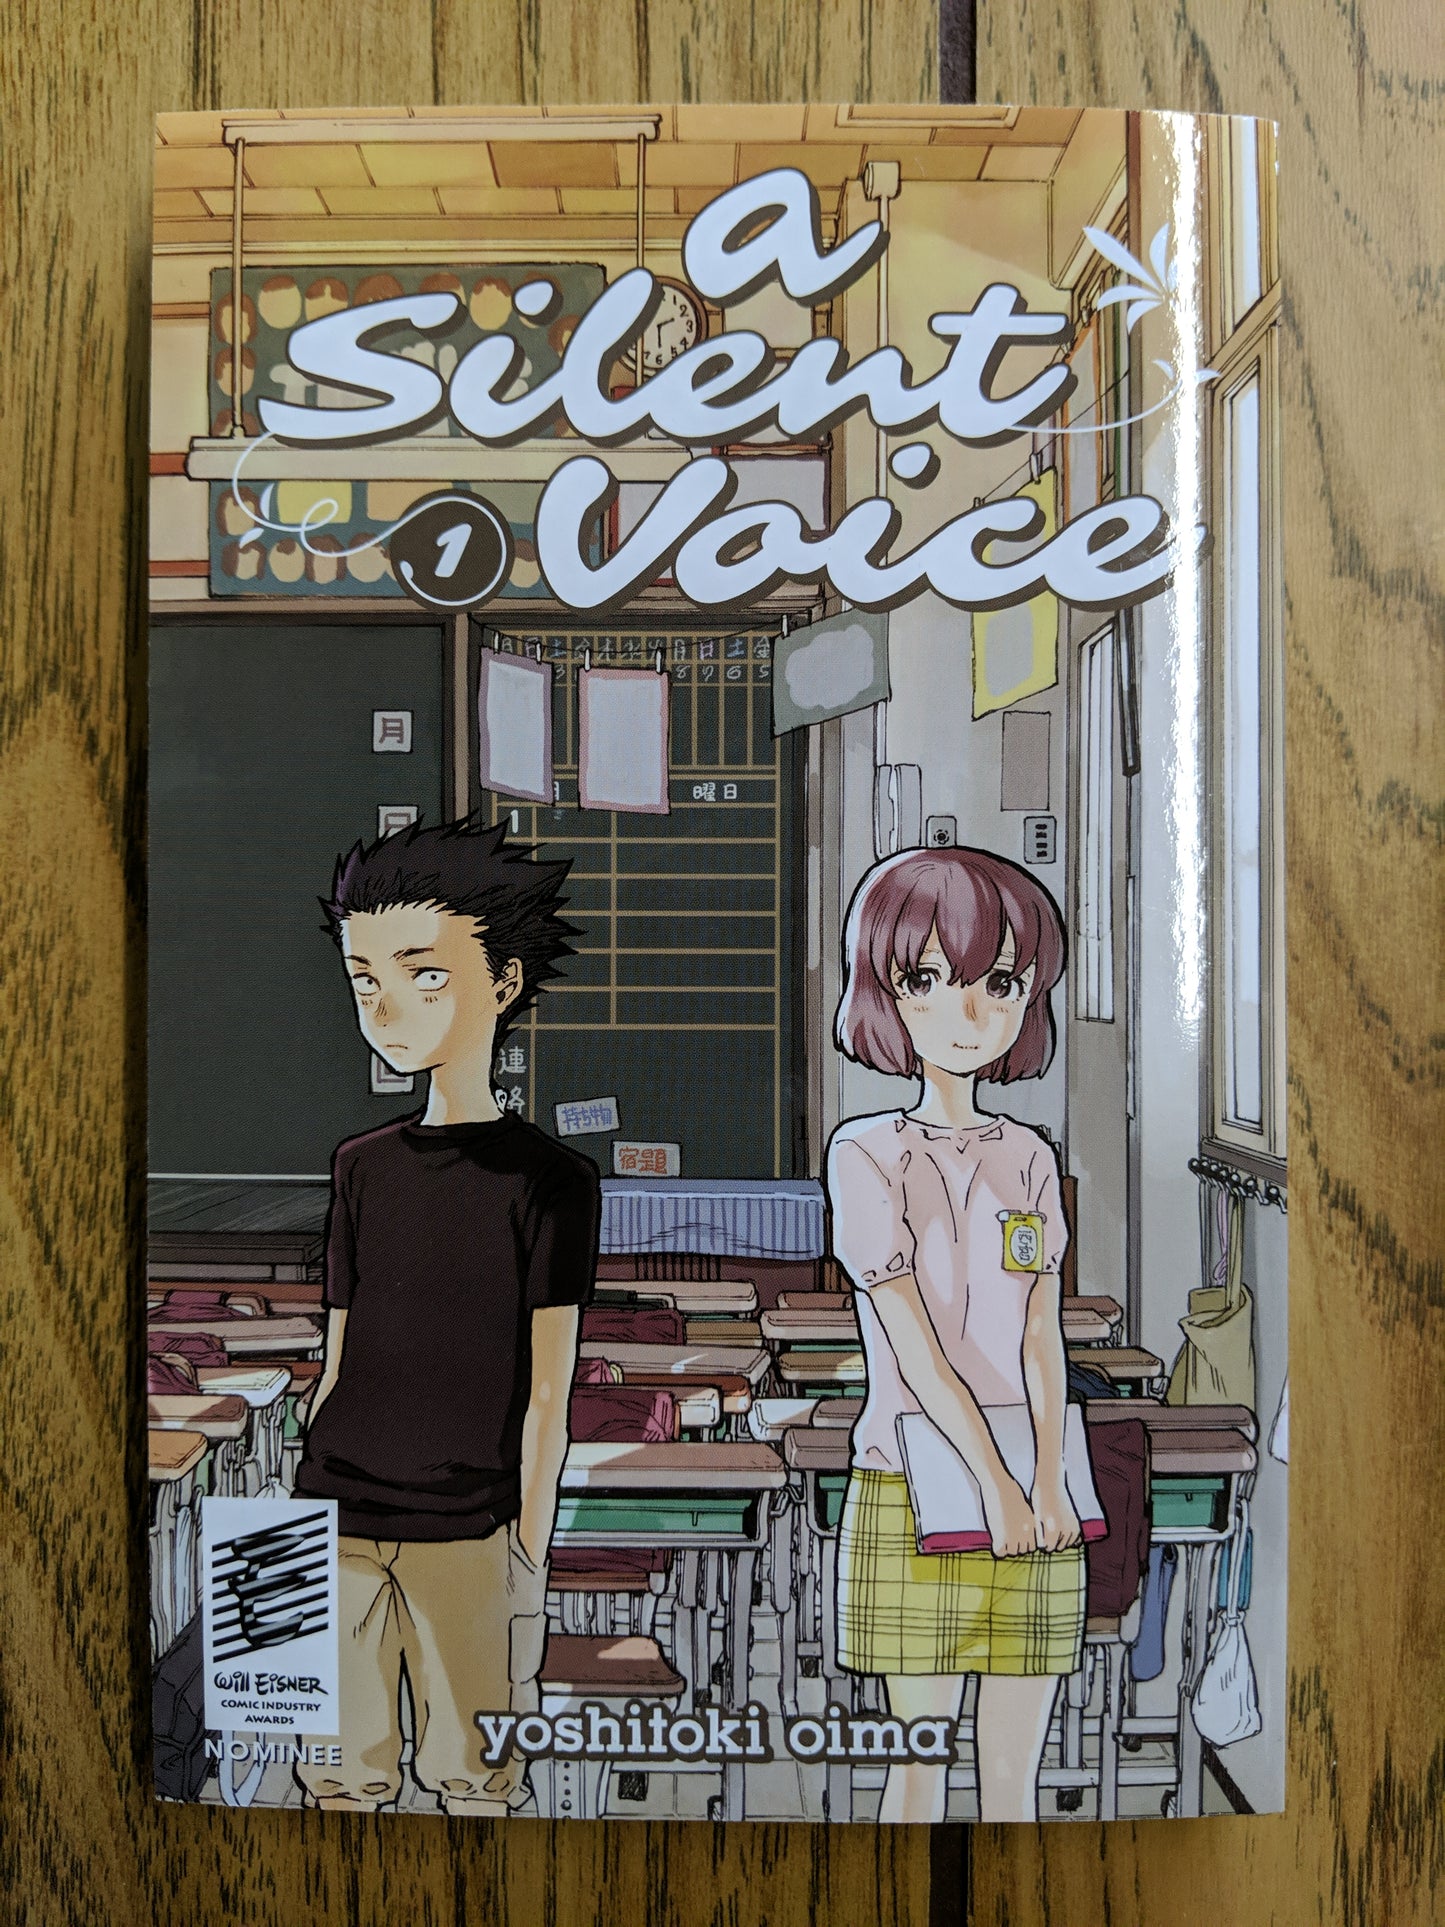 A Silent Voice Vol 1